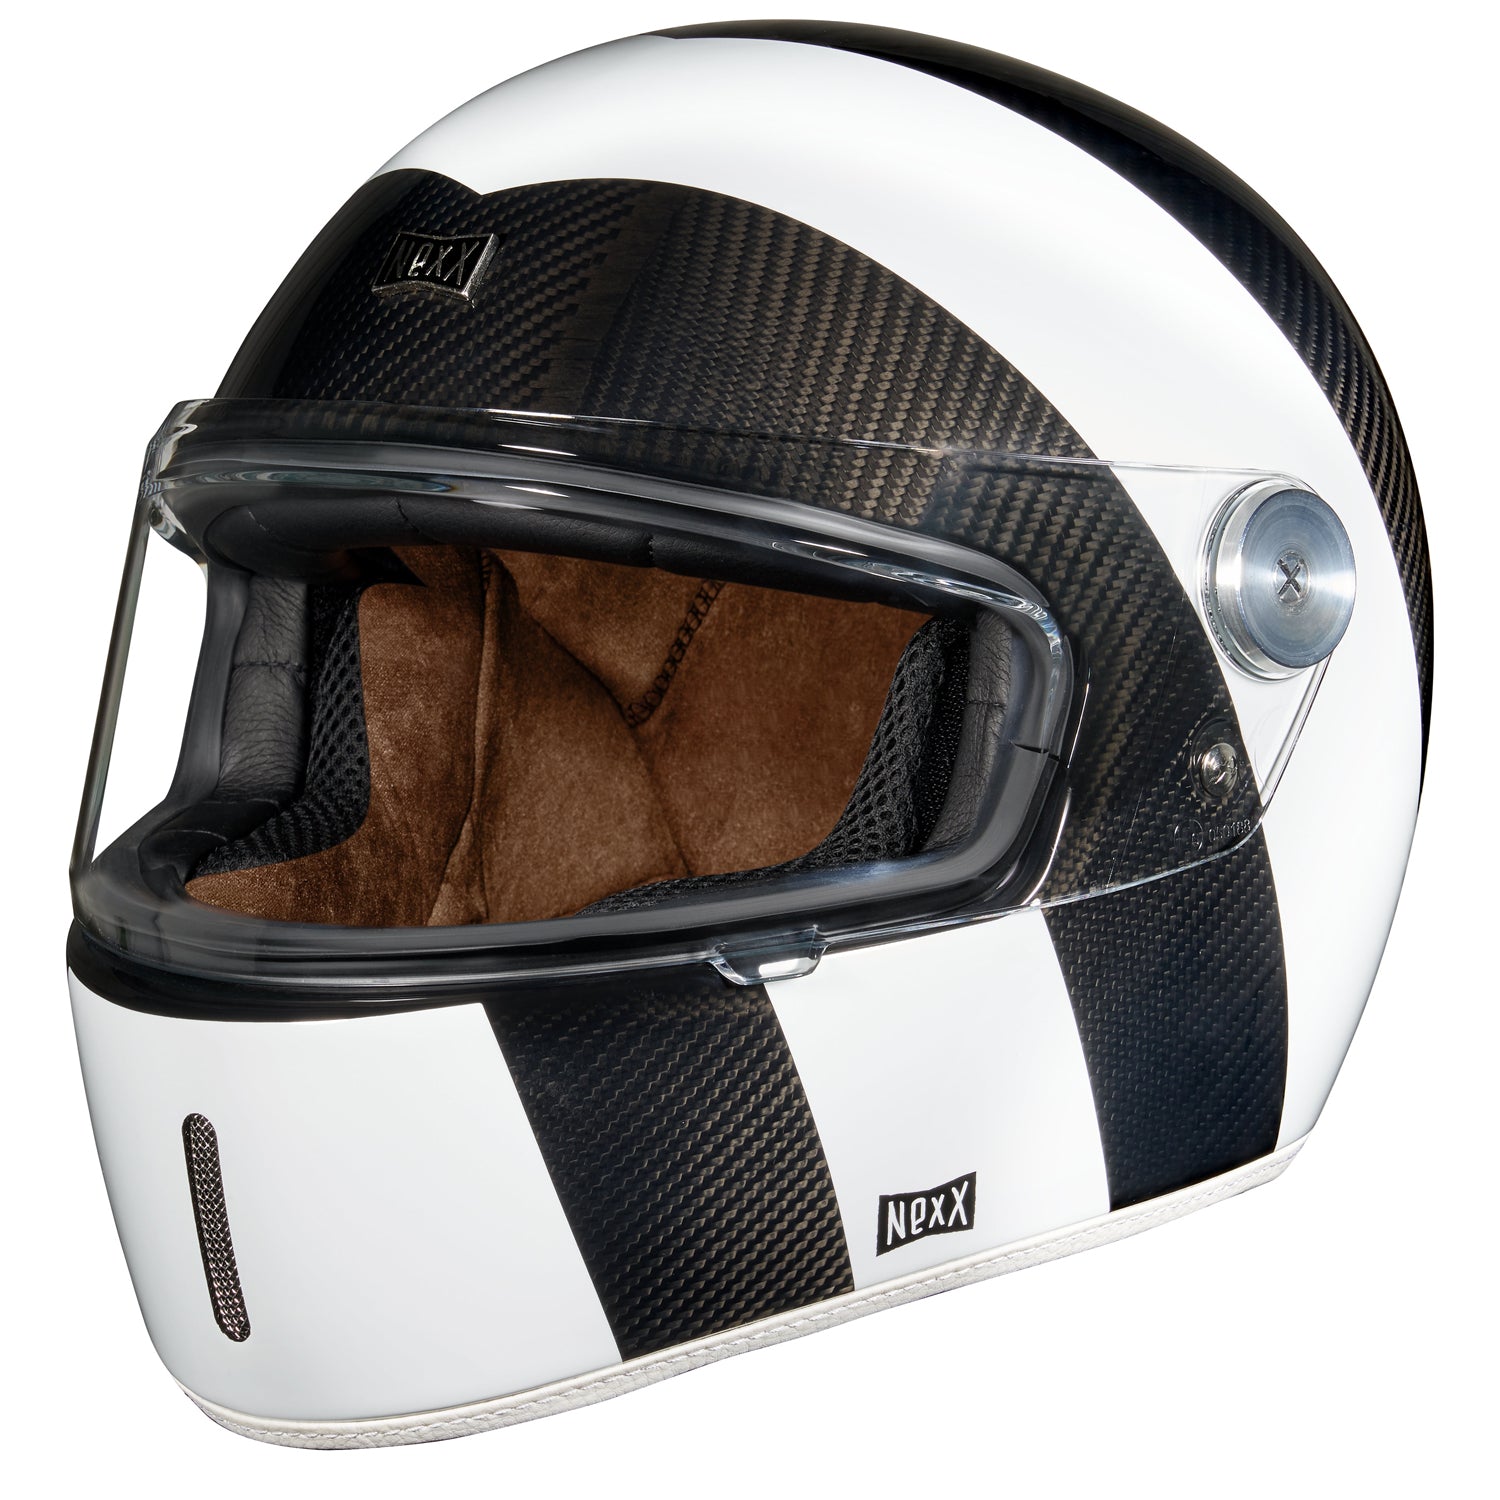 Nexx X.G100R Carbon Salt Flats Helmet (XS-2XL)